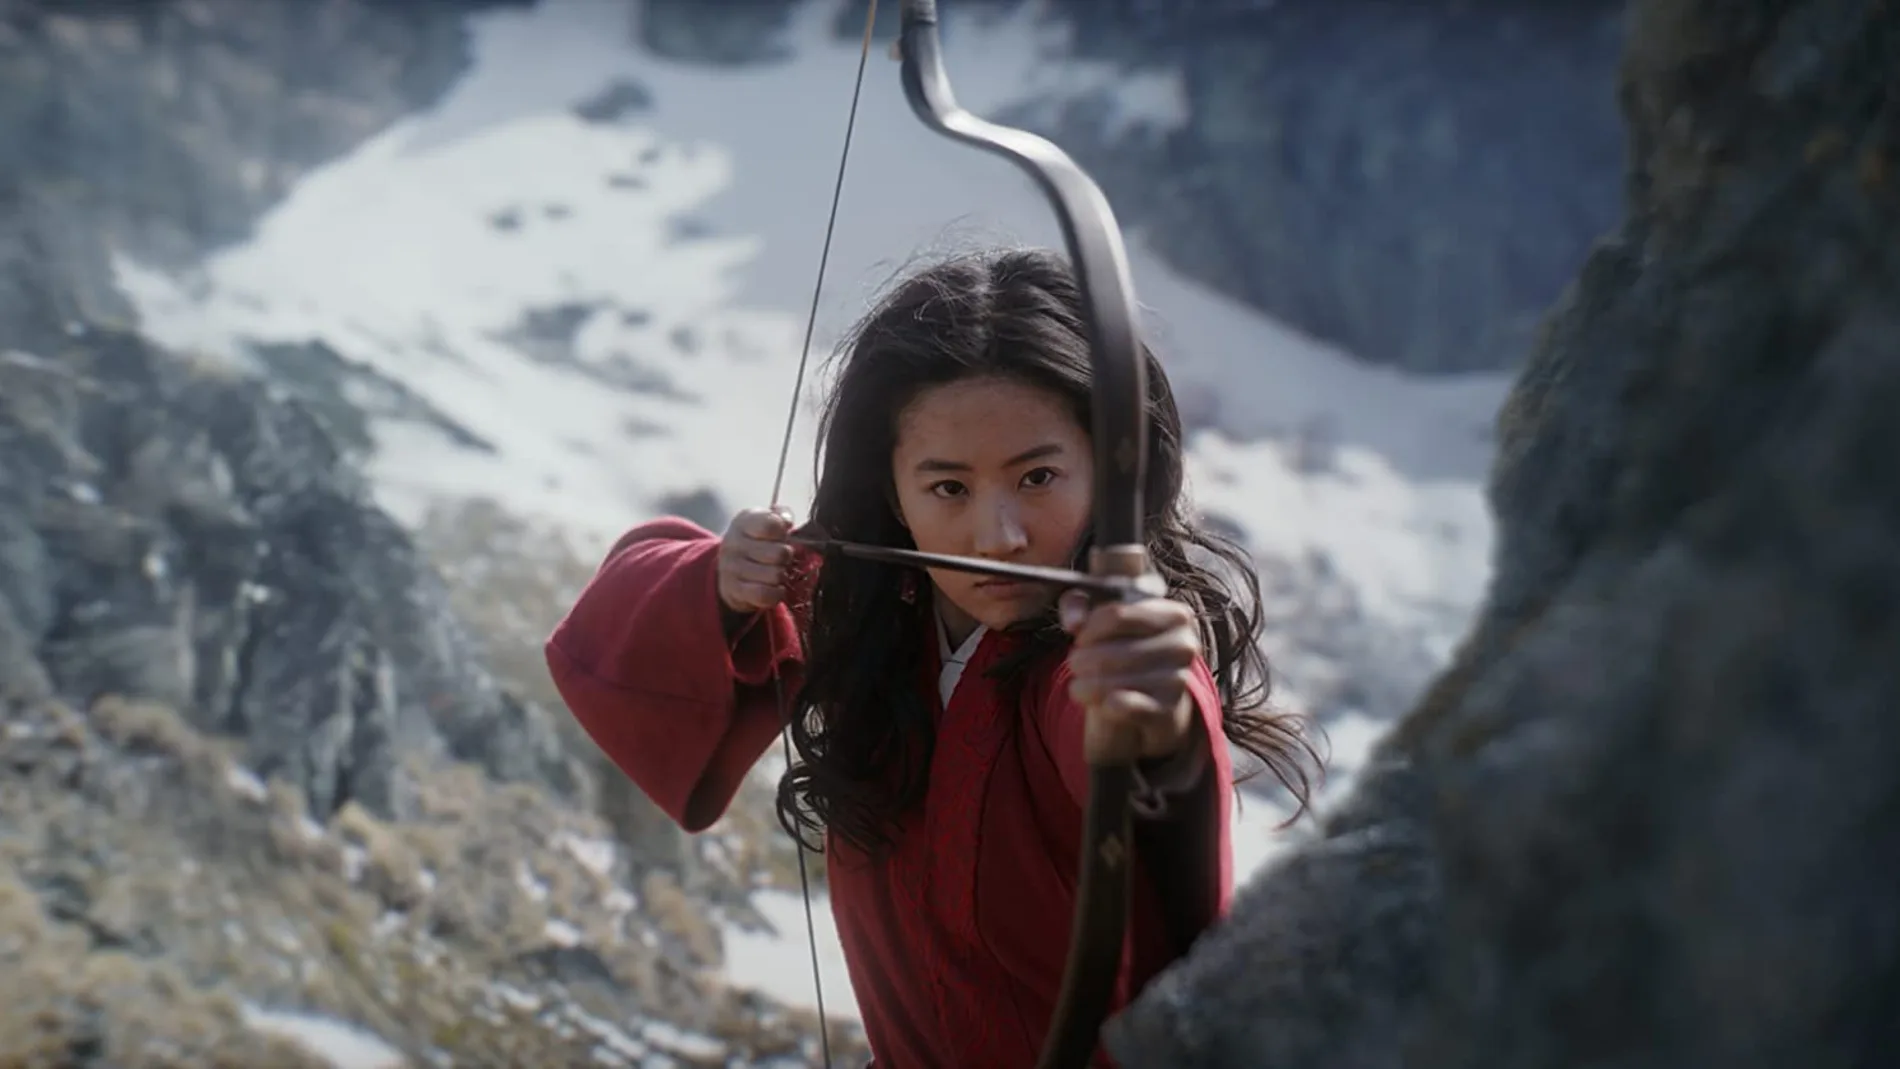 La actriz Liu Yifei protagoniza "Mulan", una de las grandes apuestas de Disney que finalmente ha visto pospuesto indefinidamente su estreno